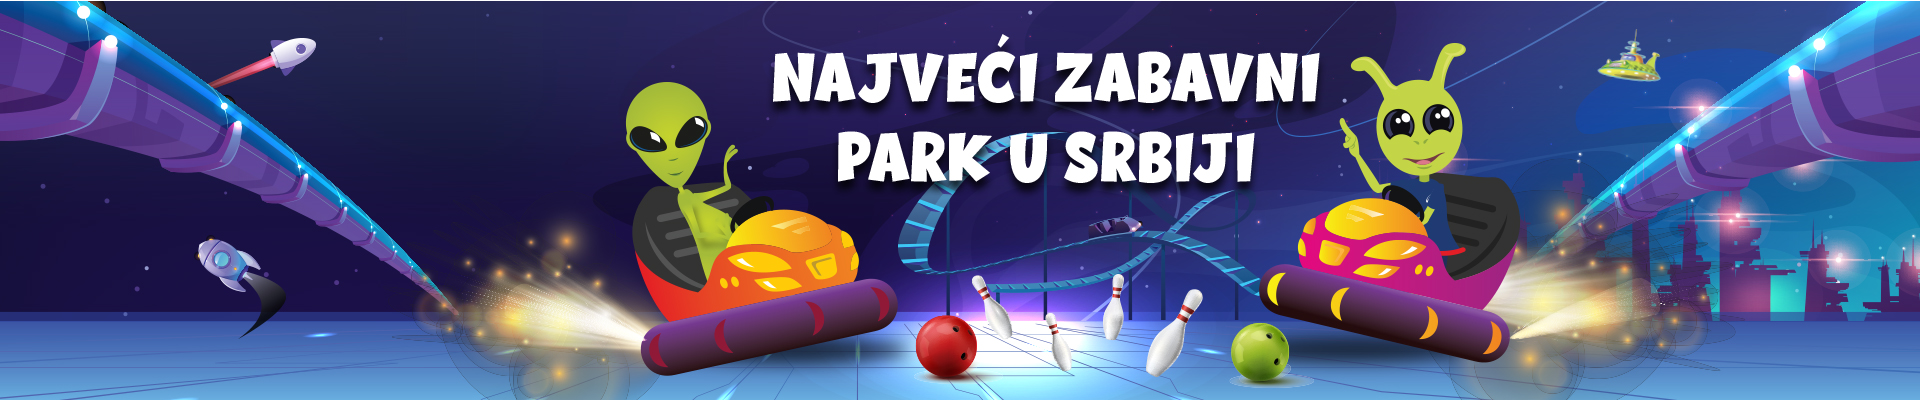 Najveći zabavni park u Srbiji